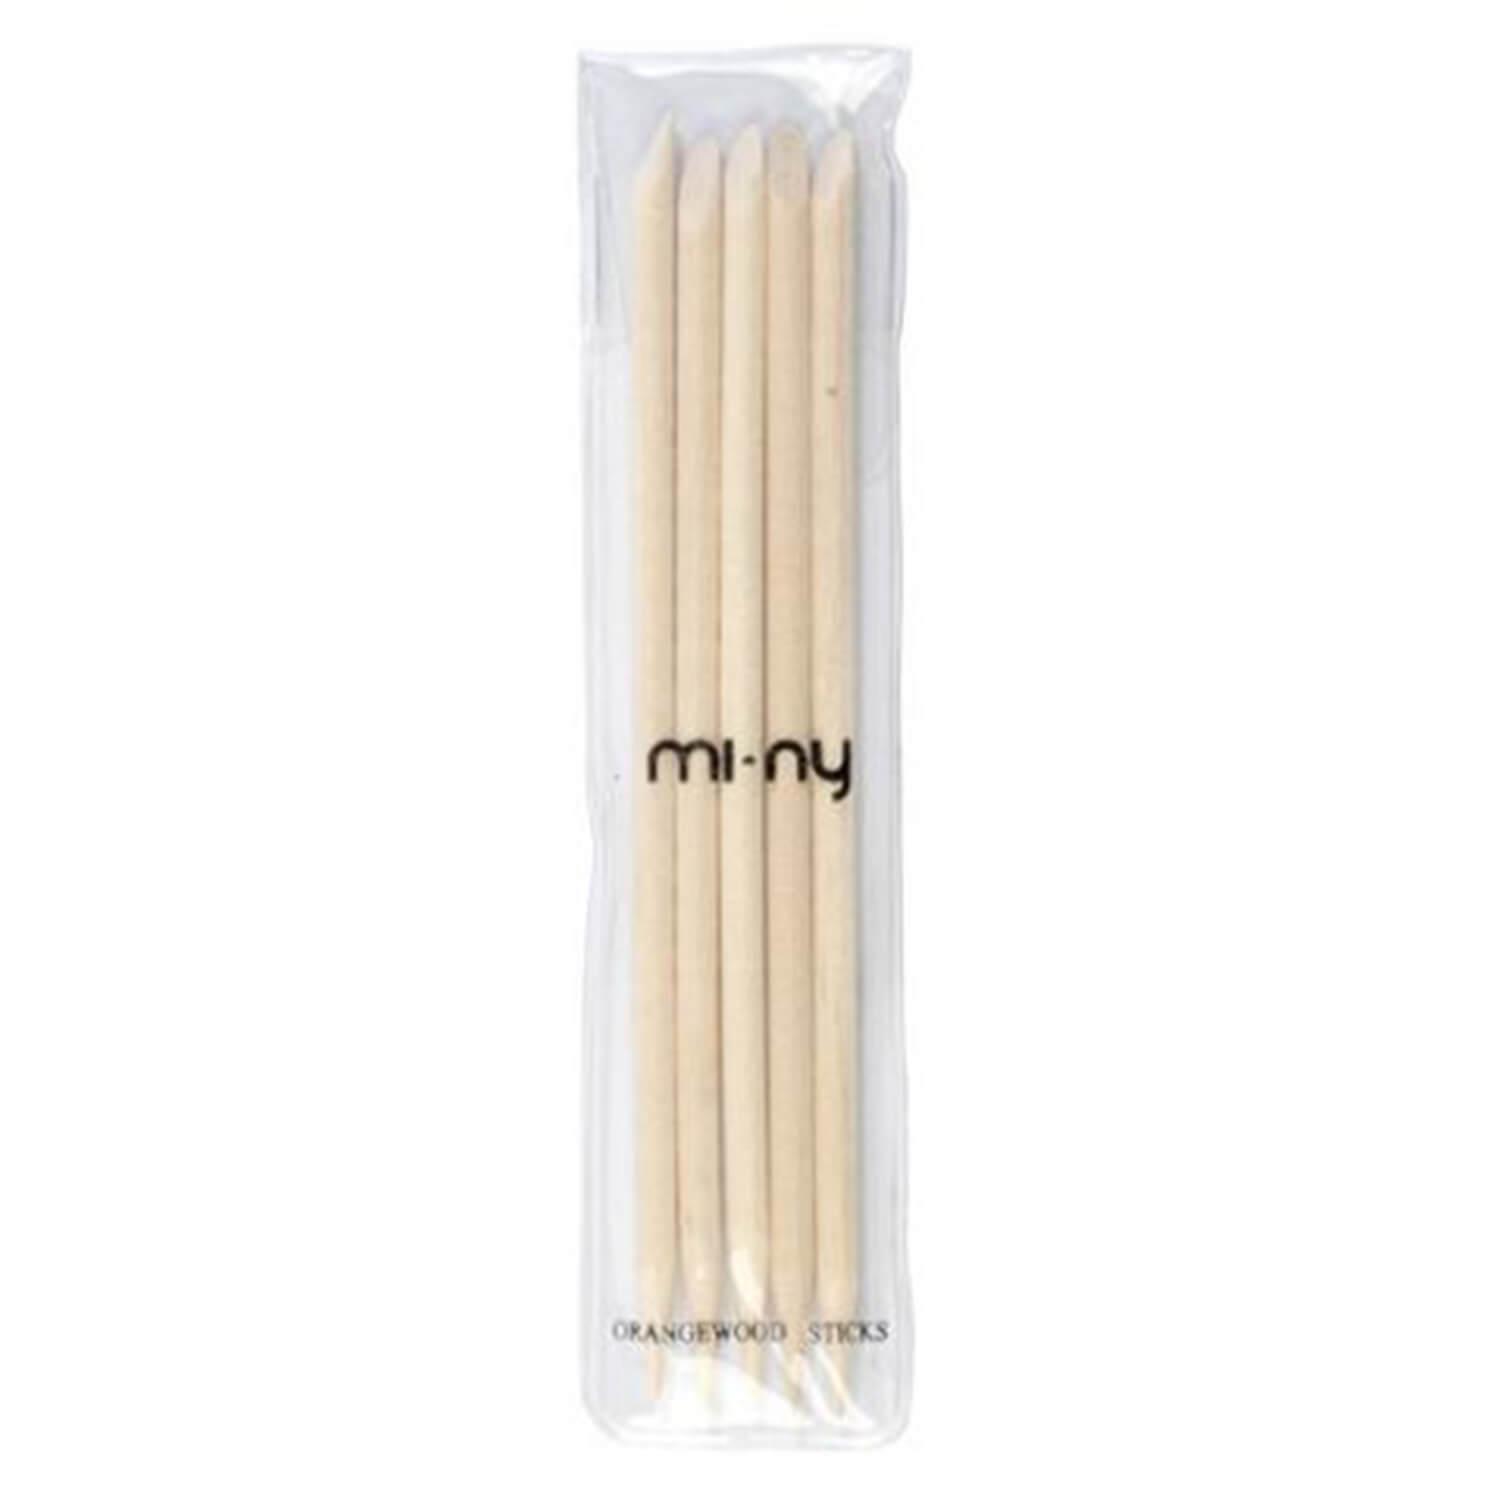 mi-ny Accessories - Nailcuticles Wooden Sticks